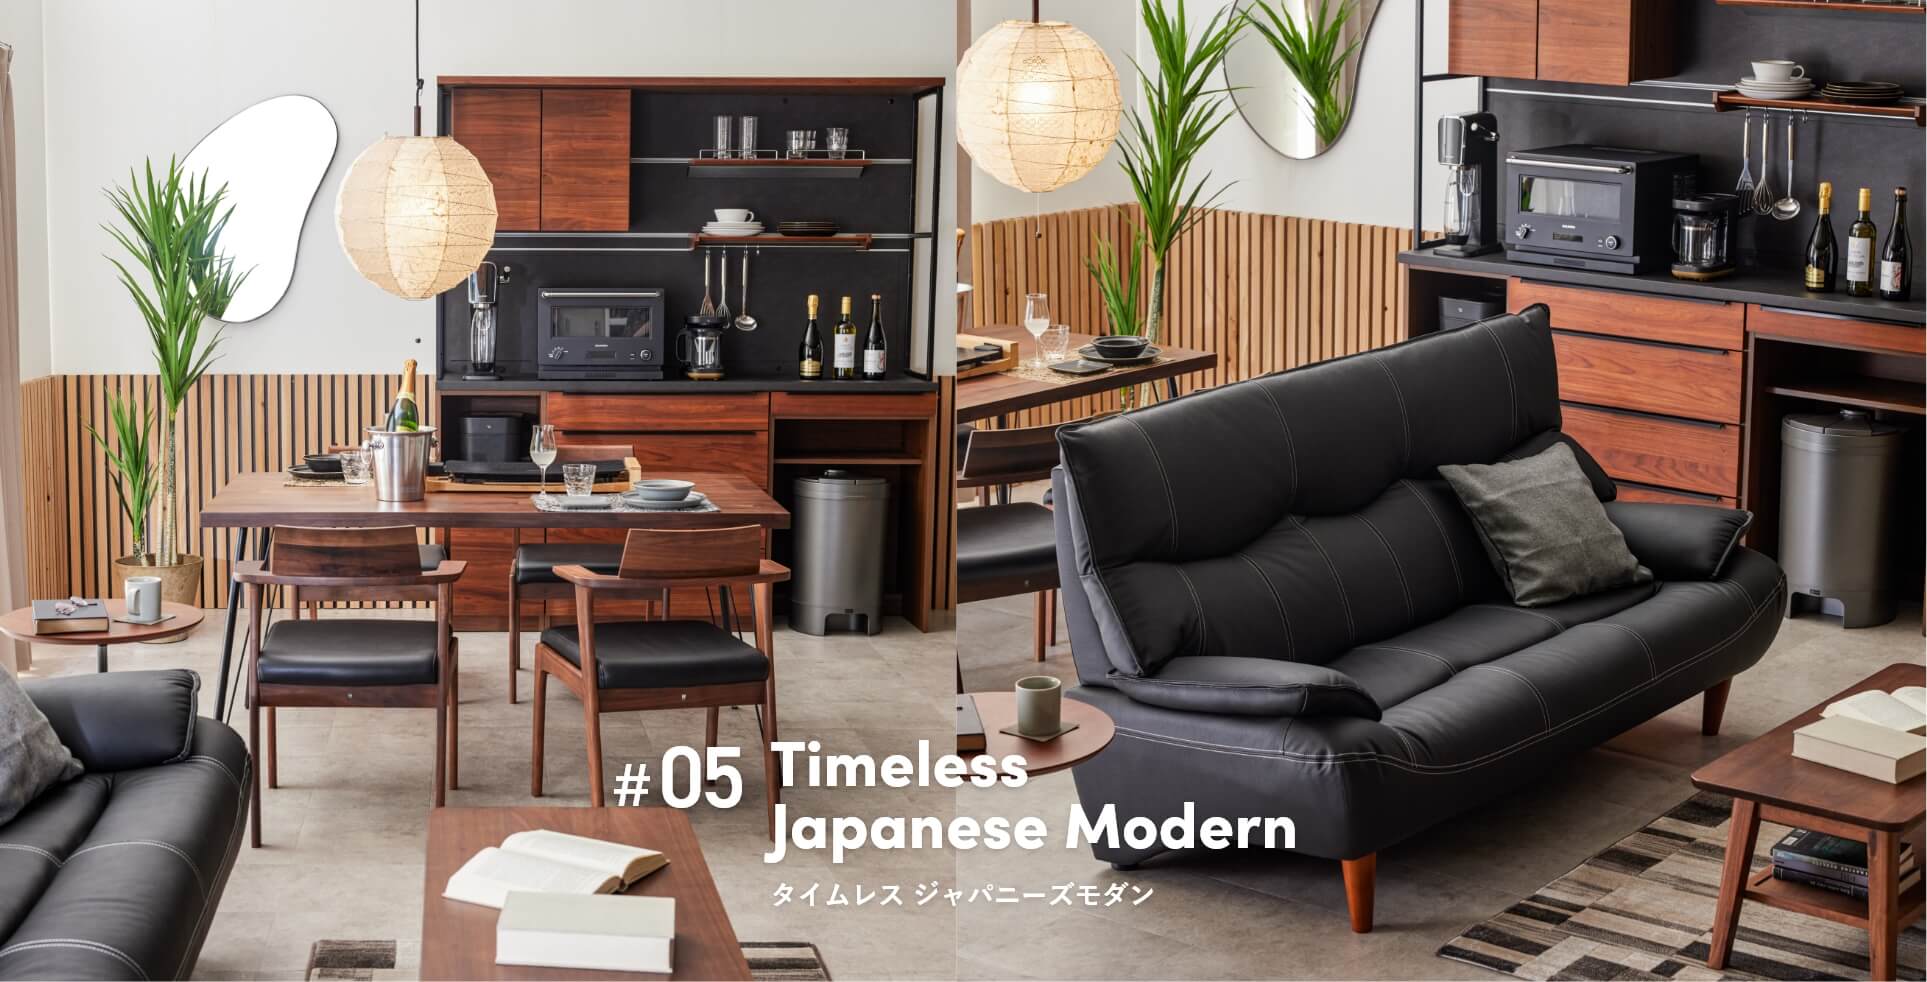 Timeless Japanese Modern